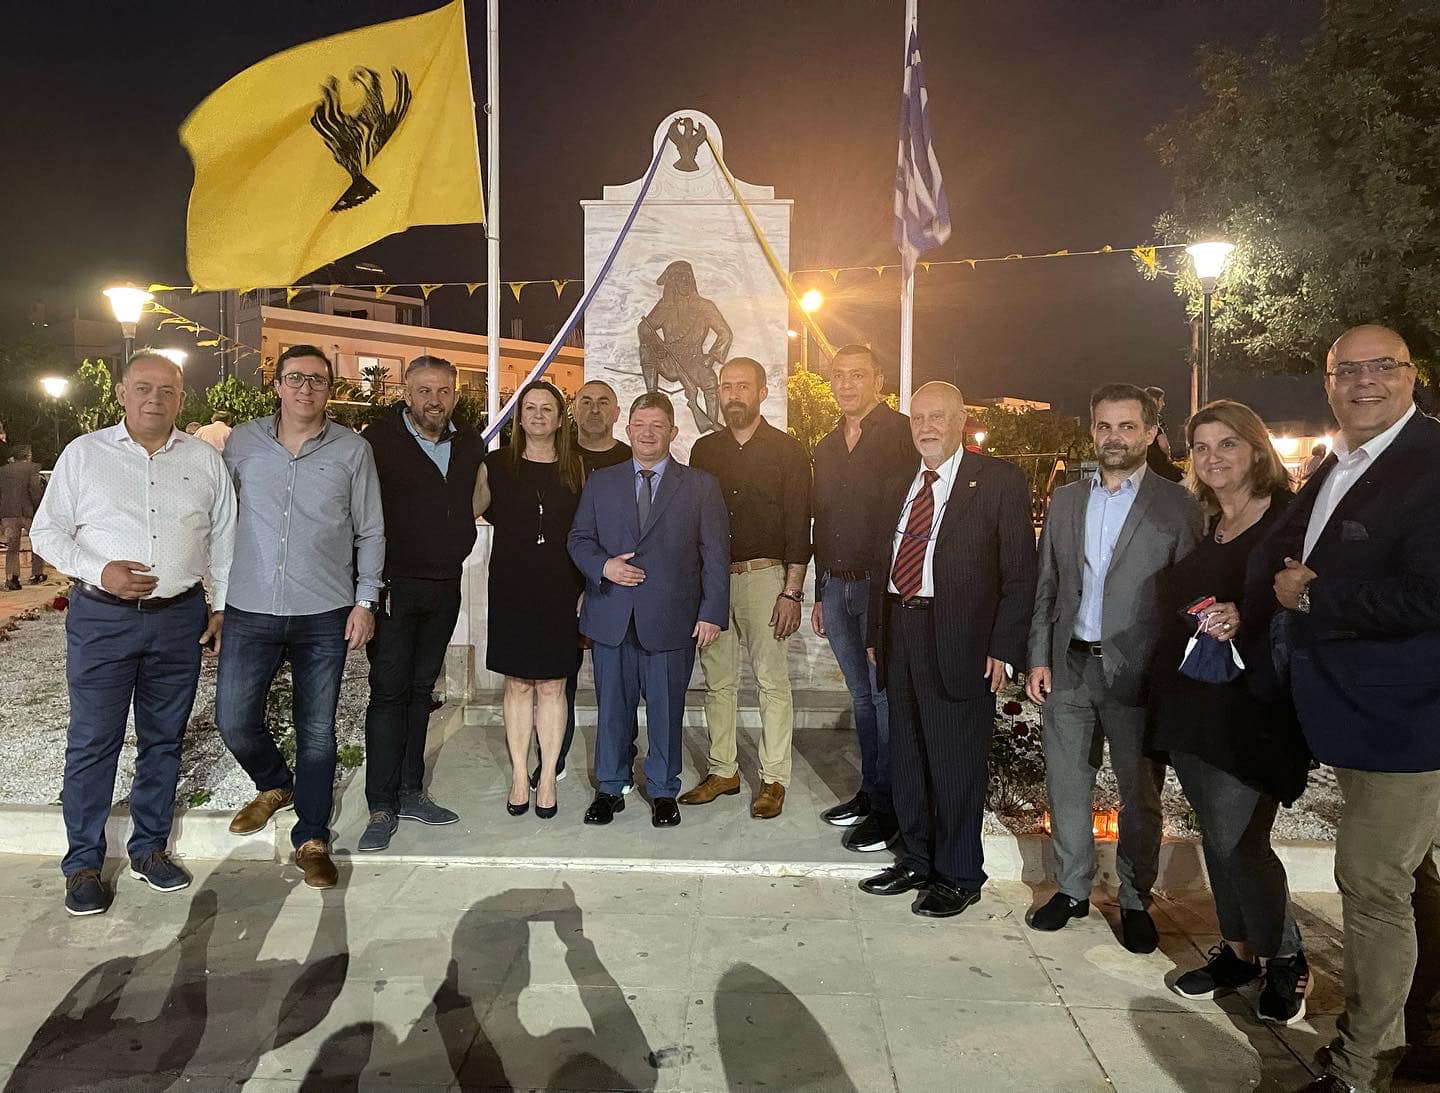 Με μια σειρά από εκδηλώσεις τιμά ο Δήμος Αχαρνών και η ΔΗΚΕΑ την επέτειο μνήμης για τη Γενοκτονία των Ελλήνων του Πόντου